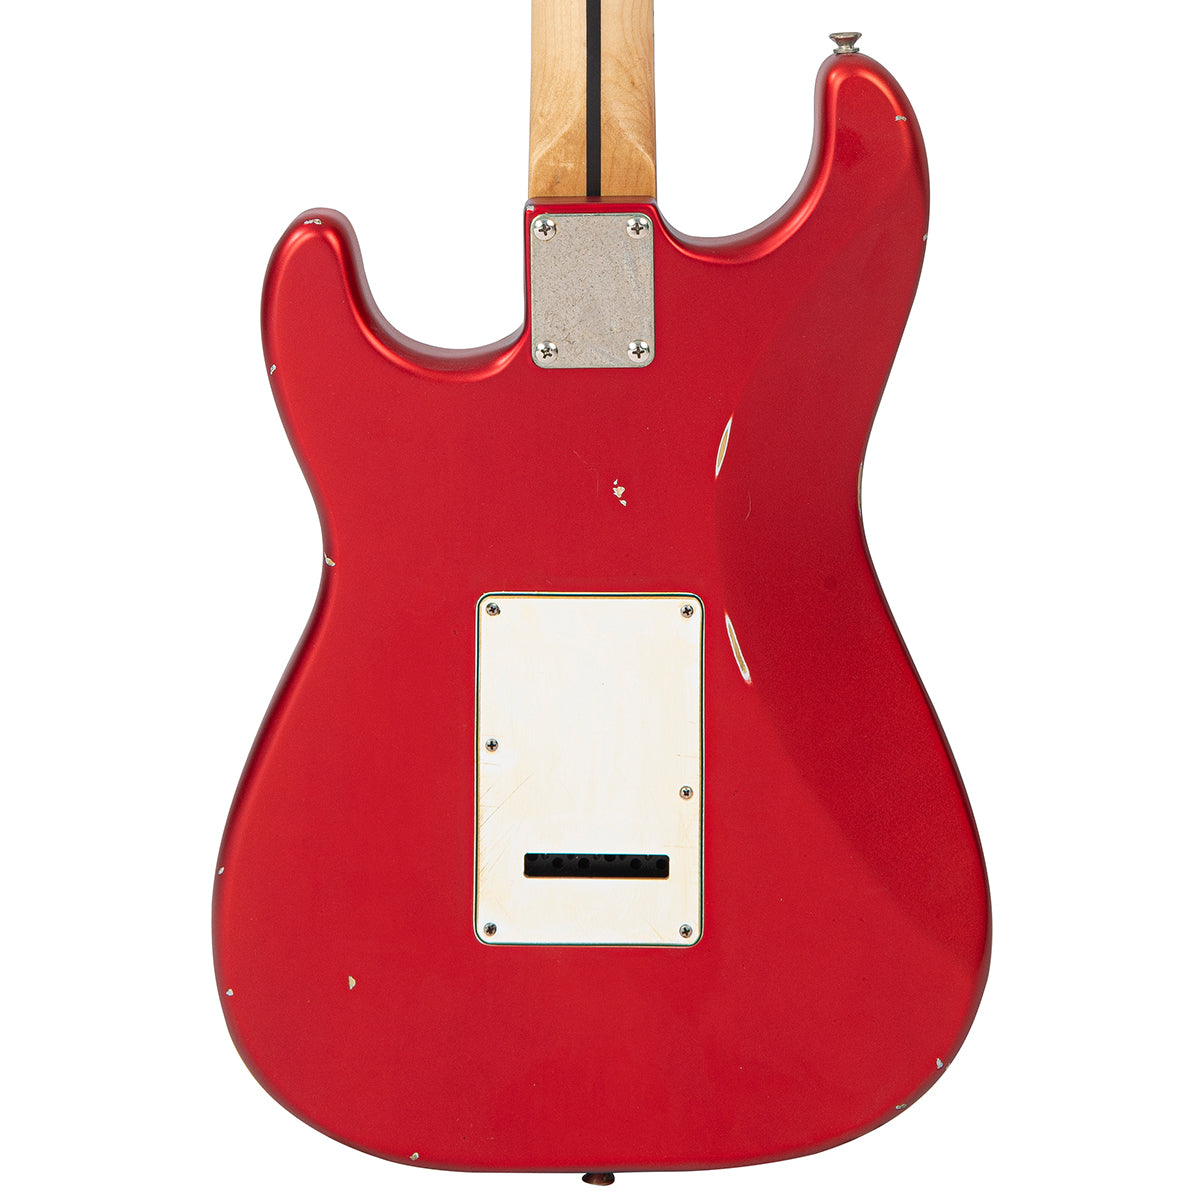 SOLD - Vintage V6 ProShop Custom-Build ~ Lightly Distressed/ Matt Candy Apple Red, Electrics for sale at Richards Guitars.